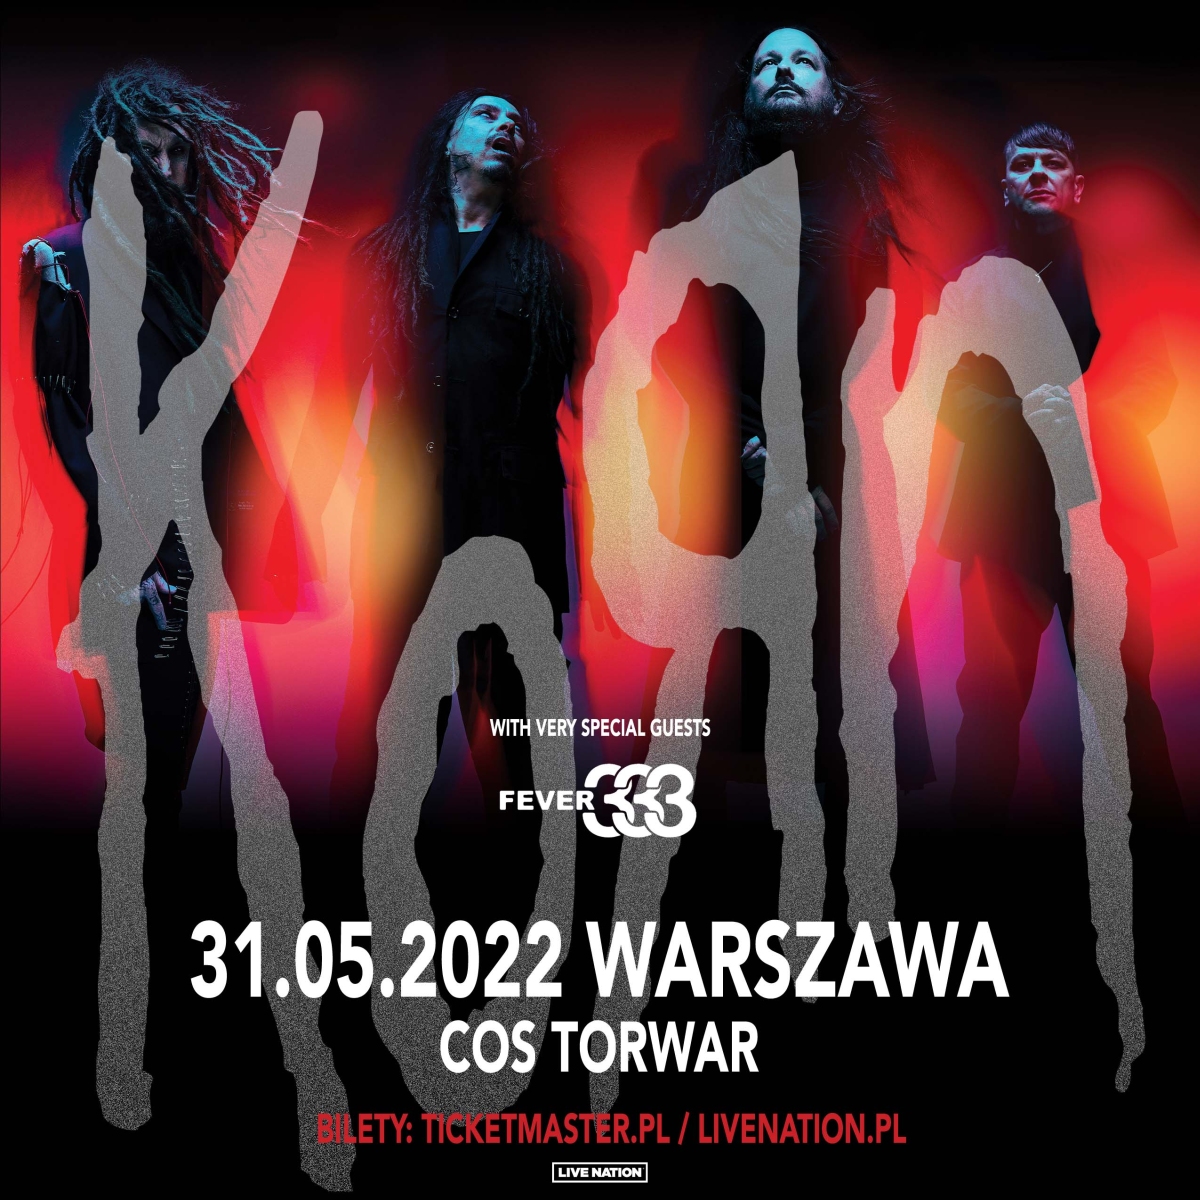 Korn i FEVER 333 już za kilka dni zagrają koncert w Polsce. Warto tam